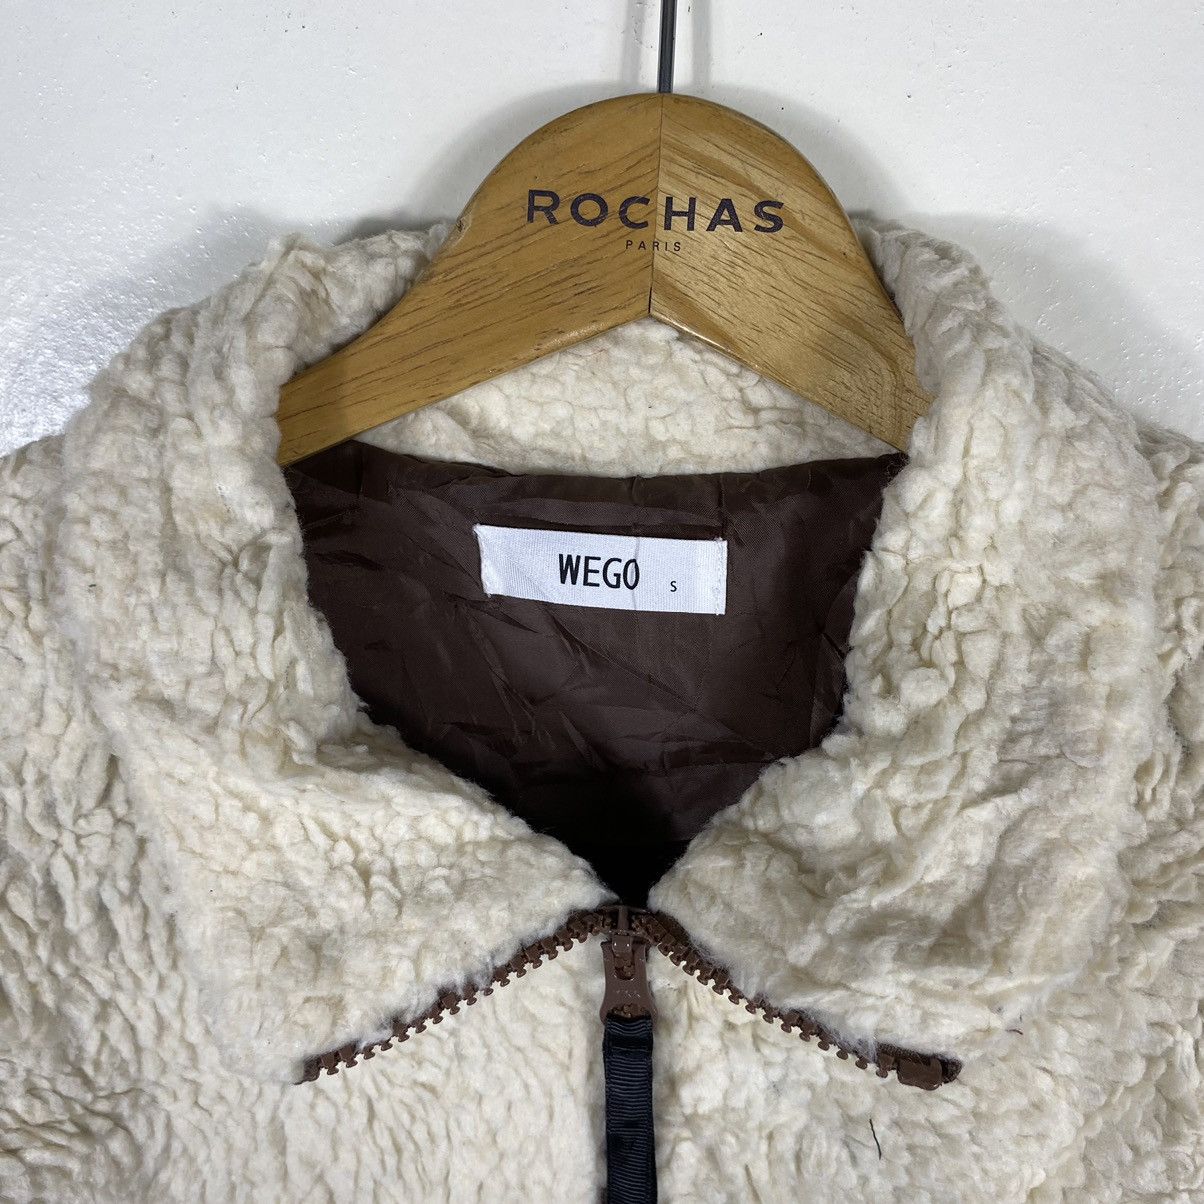 Japanese Brand Japanese Brand Wego Sherpa Jacket Patagonia Style Size US S / EU 44-46 / 1 - 4 Thumbnail